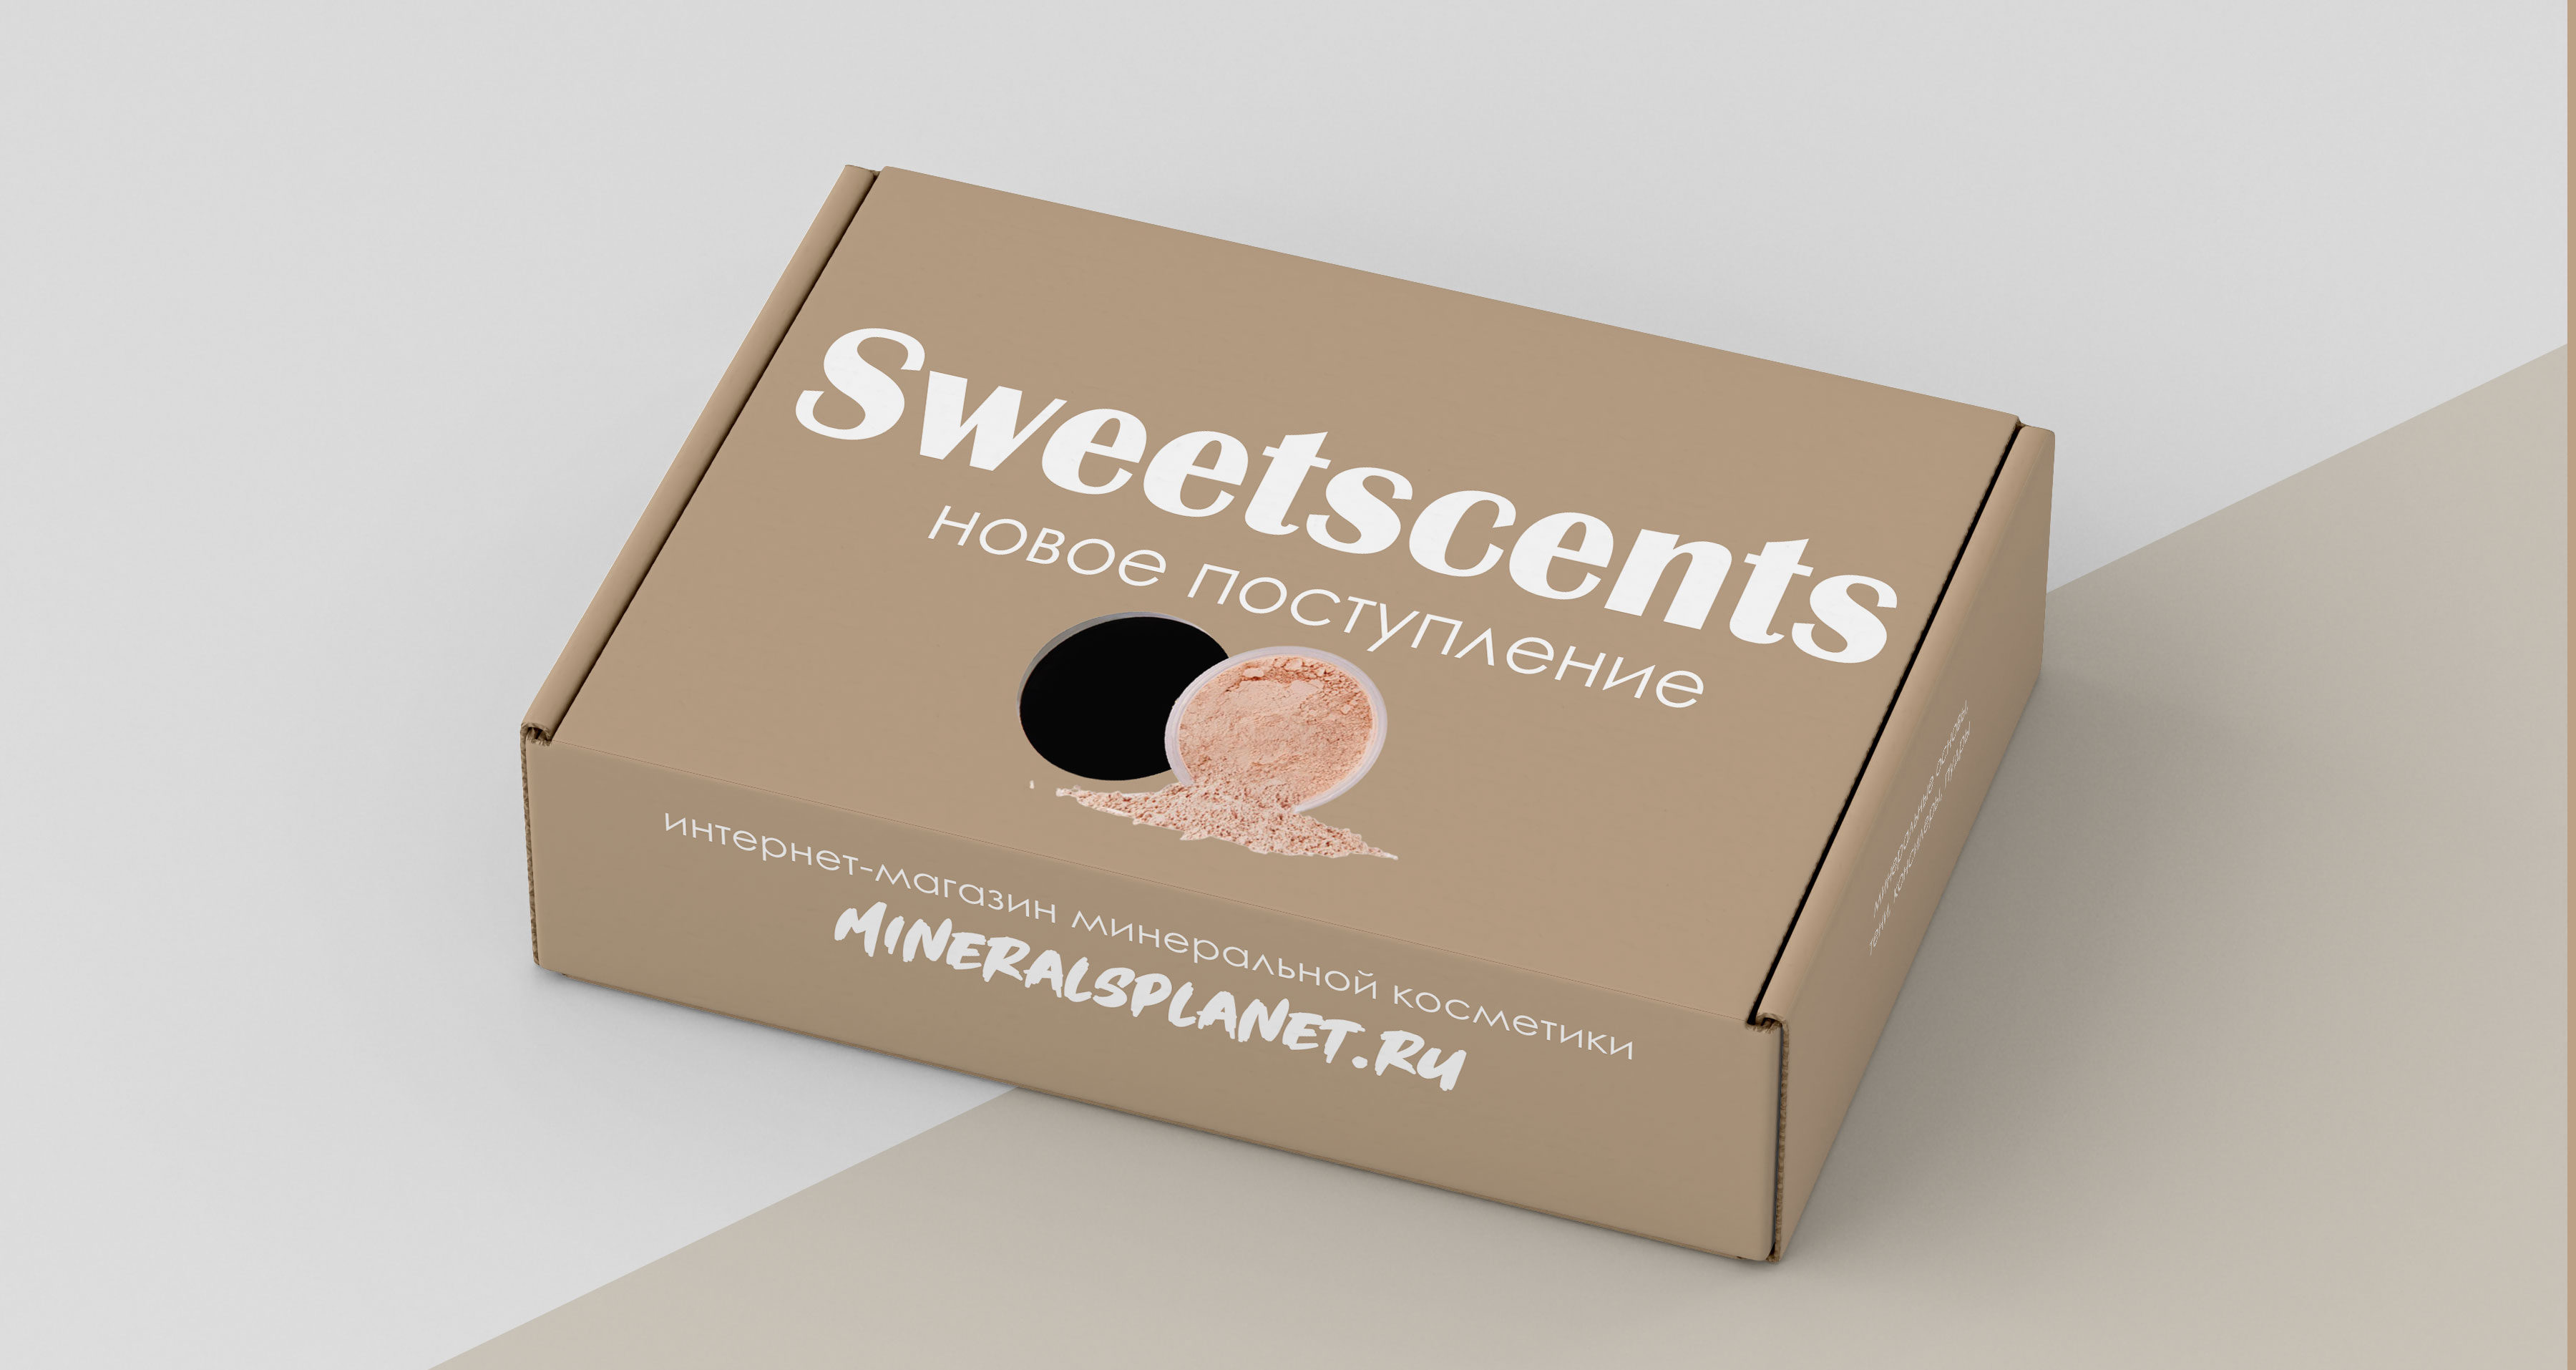 Новое поступление пудры Sweetscents  в интернет-магазине mineralsplanet.ru